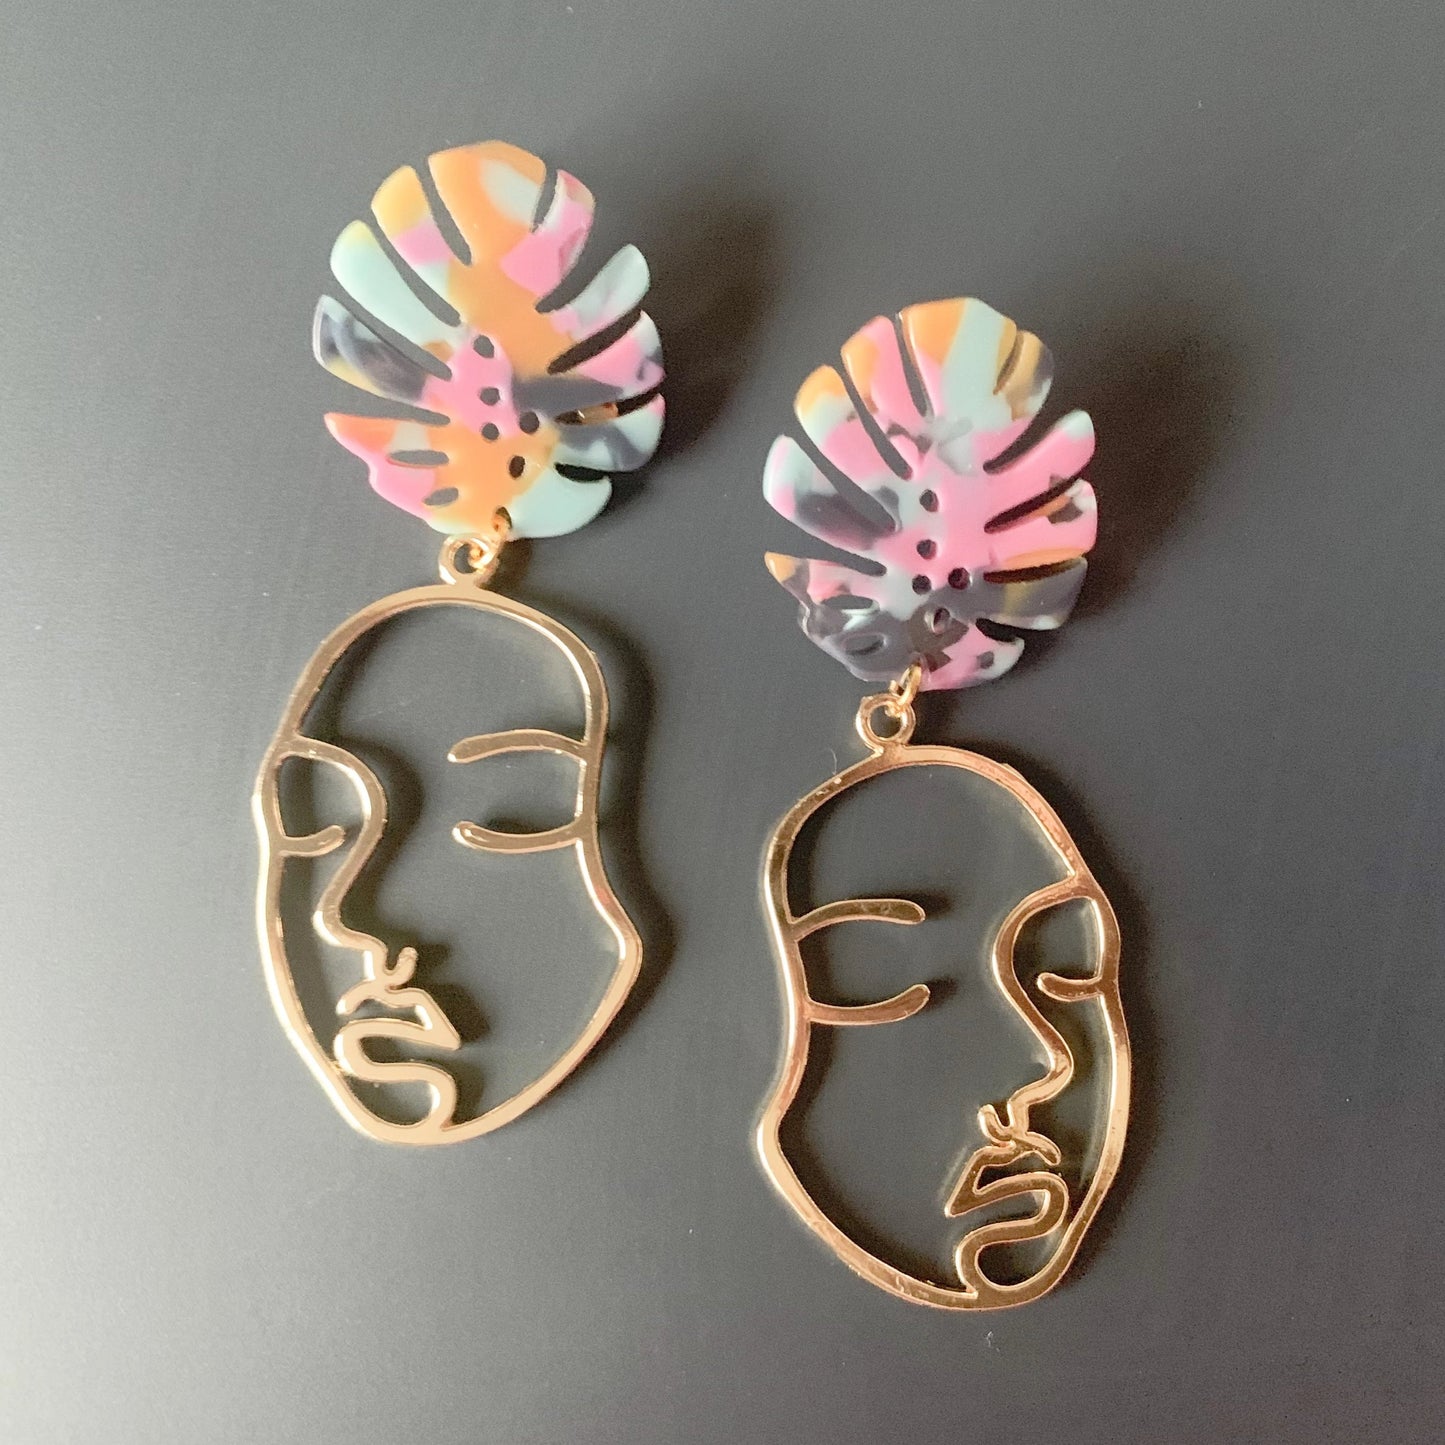 Mrs. Gele // Brass & Acrylic Earrings